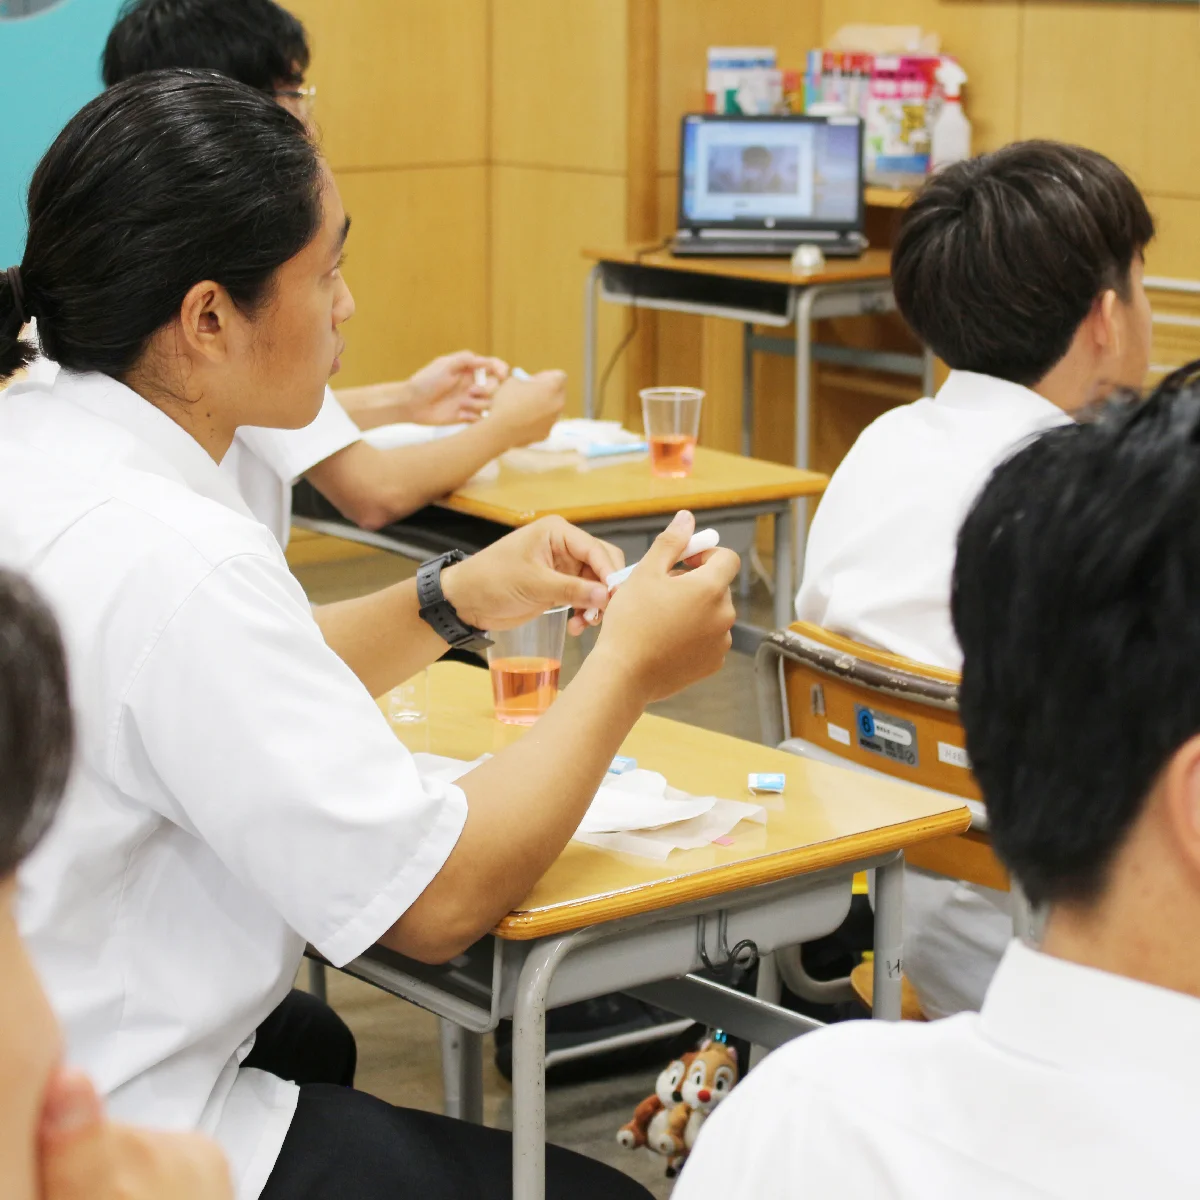 生理を正しく考えるために。吸水ショーツを取り扱う【Be-A Japan】が男女共学の学校で「生理セミナー」を開催